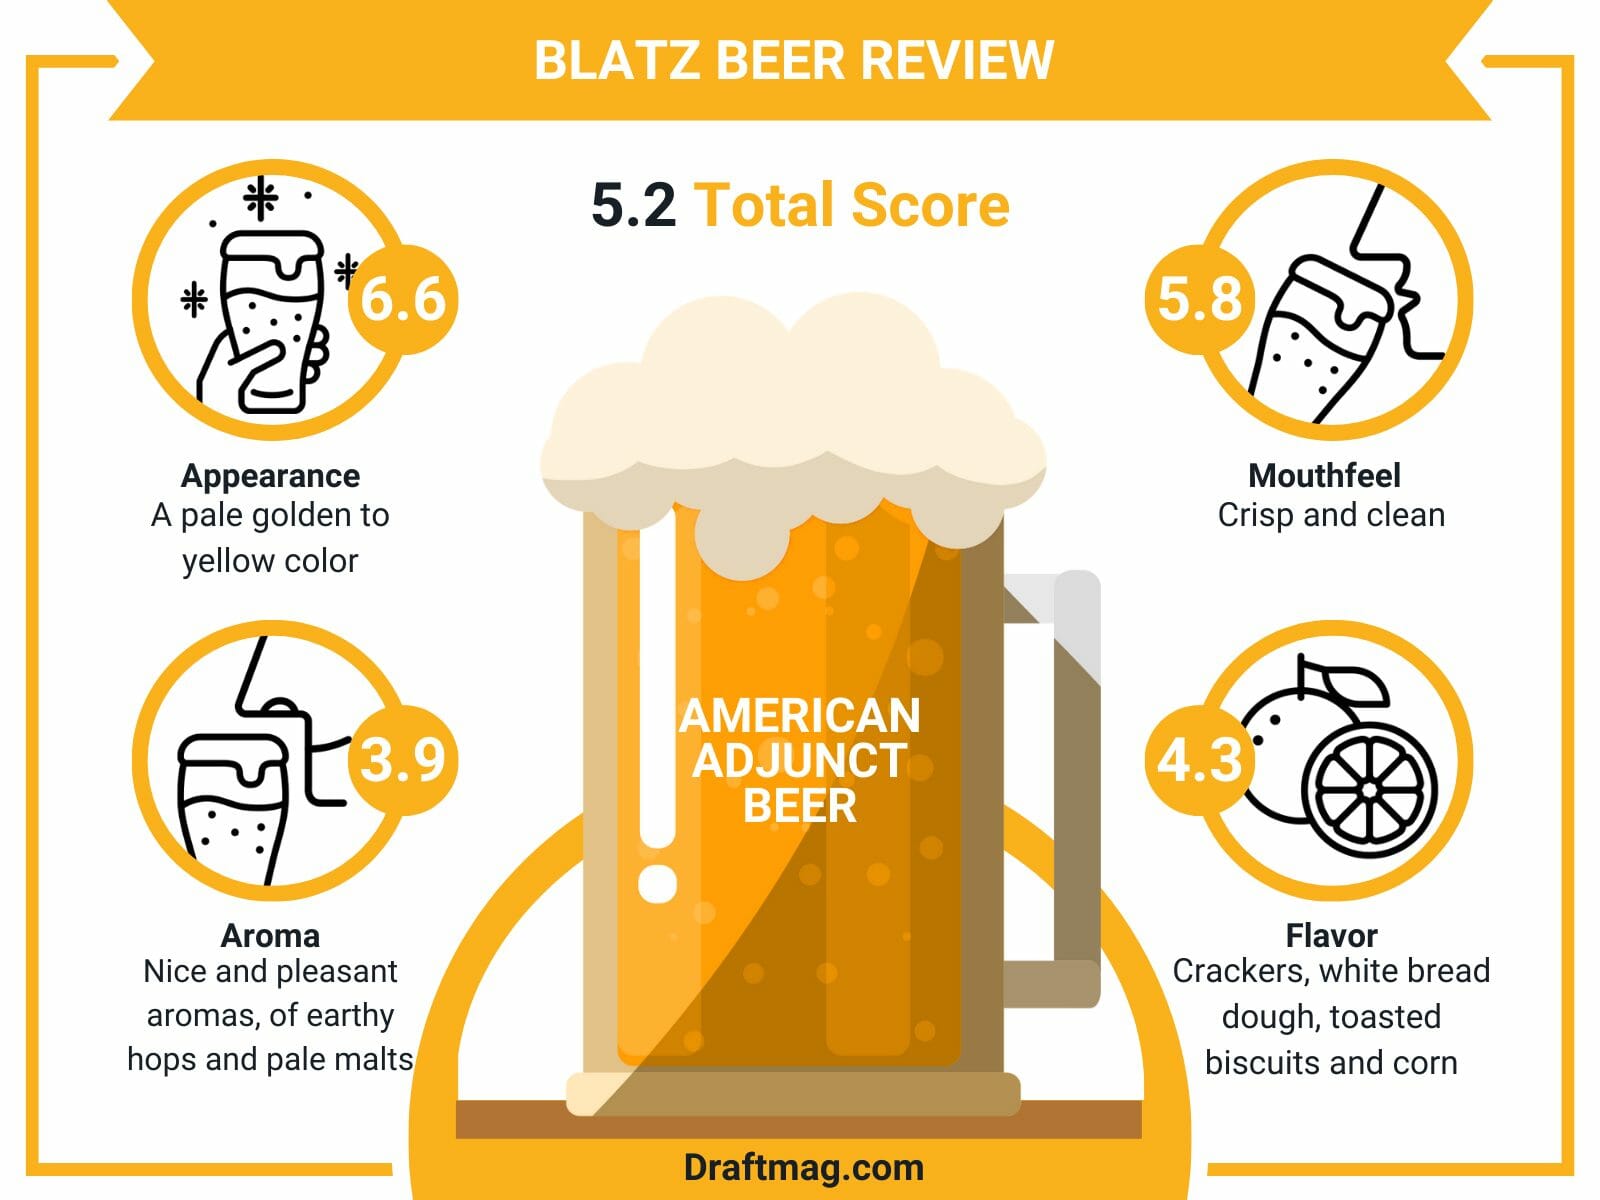 Blatz beer review infographic